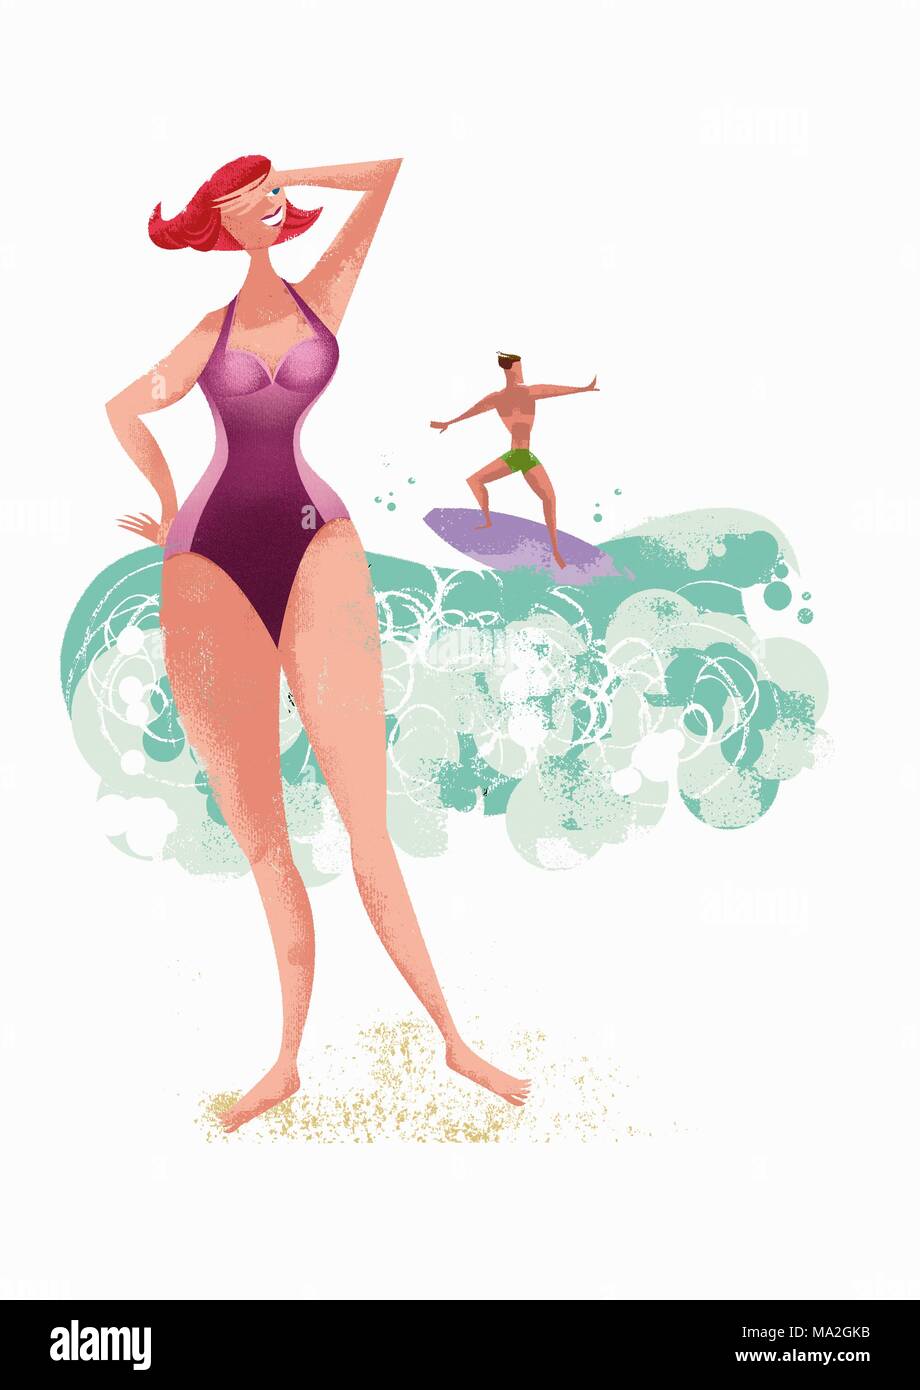 Una donna in costume da bagno in posa su una spiaggia con un uomo surf in background (illustrazione) Foto Stock